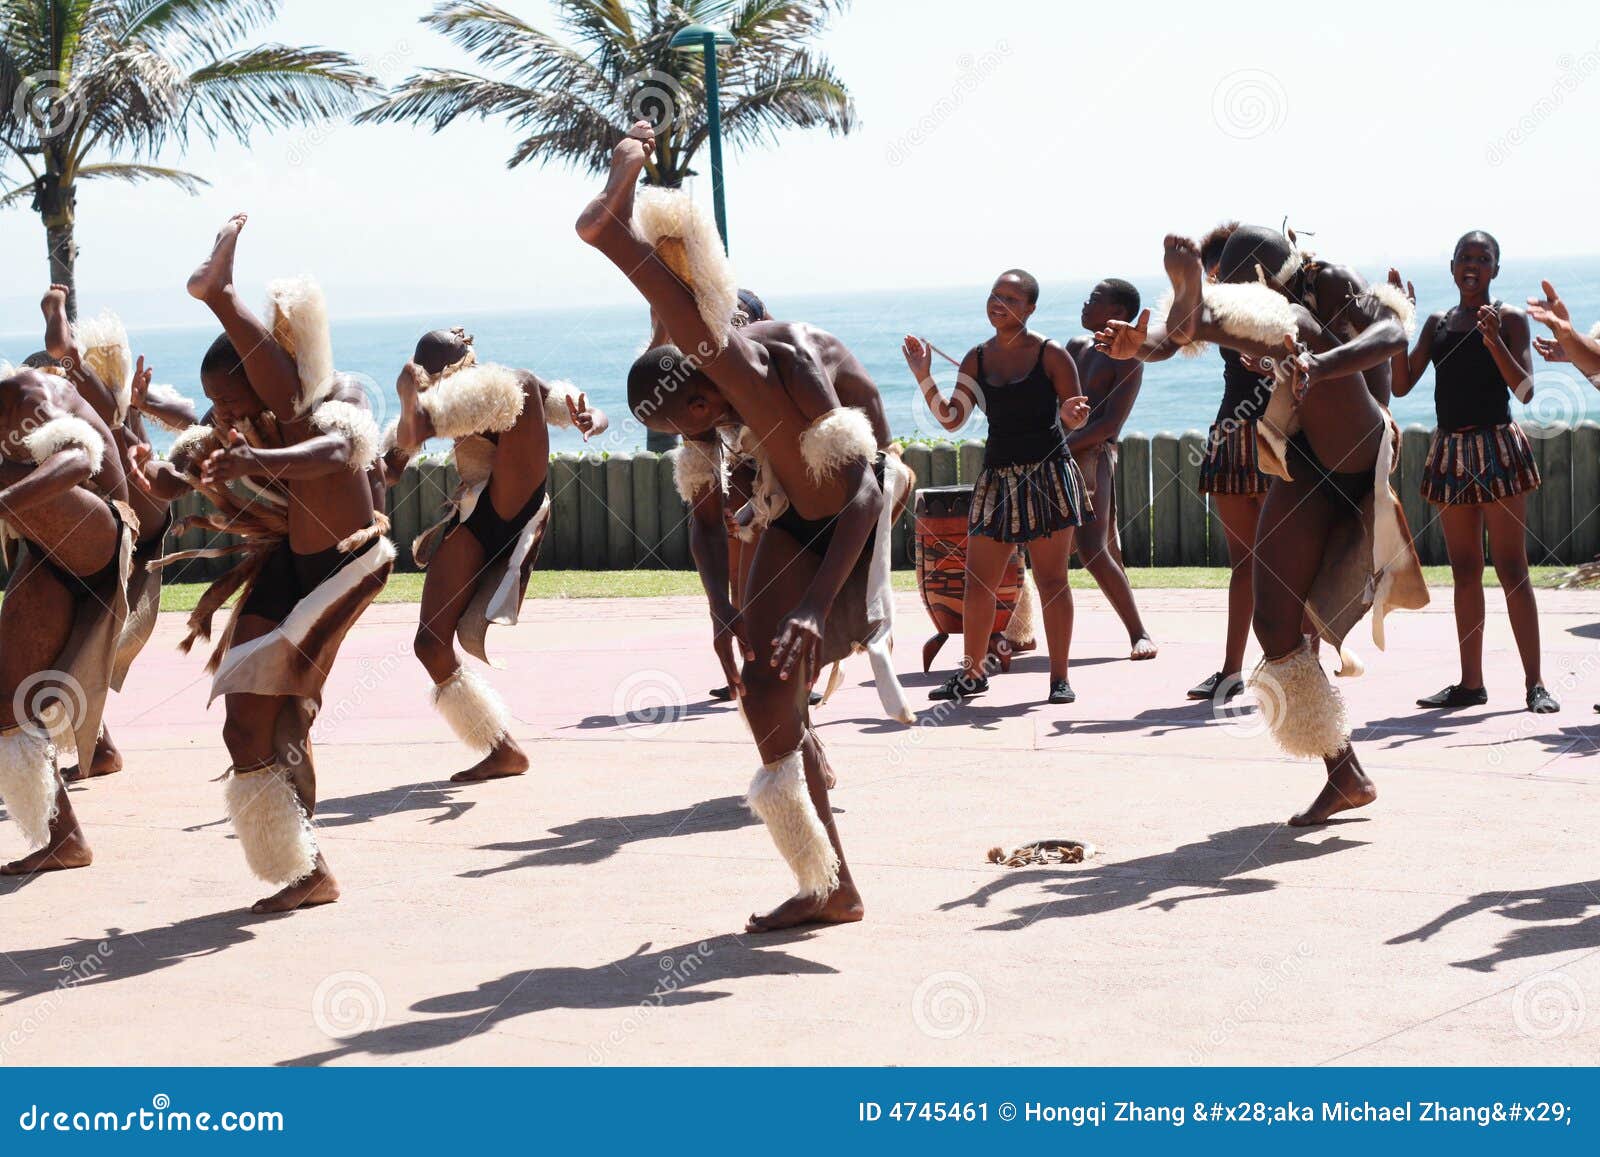 Dance zulu culture